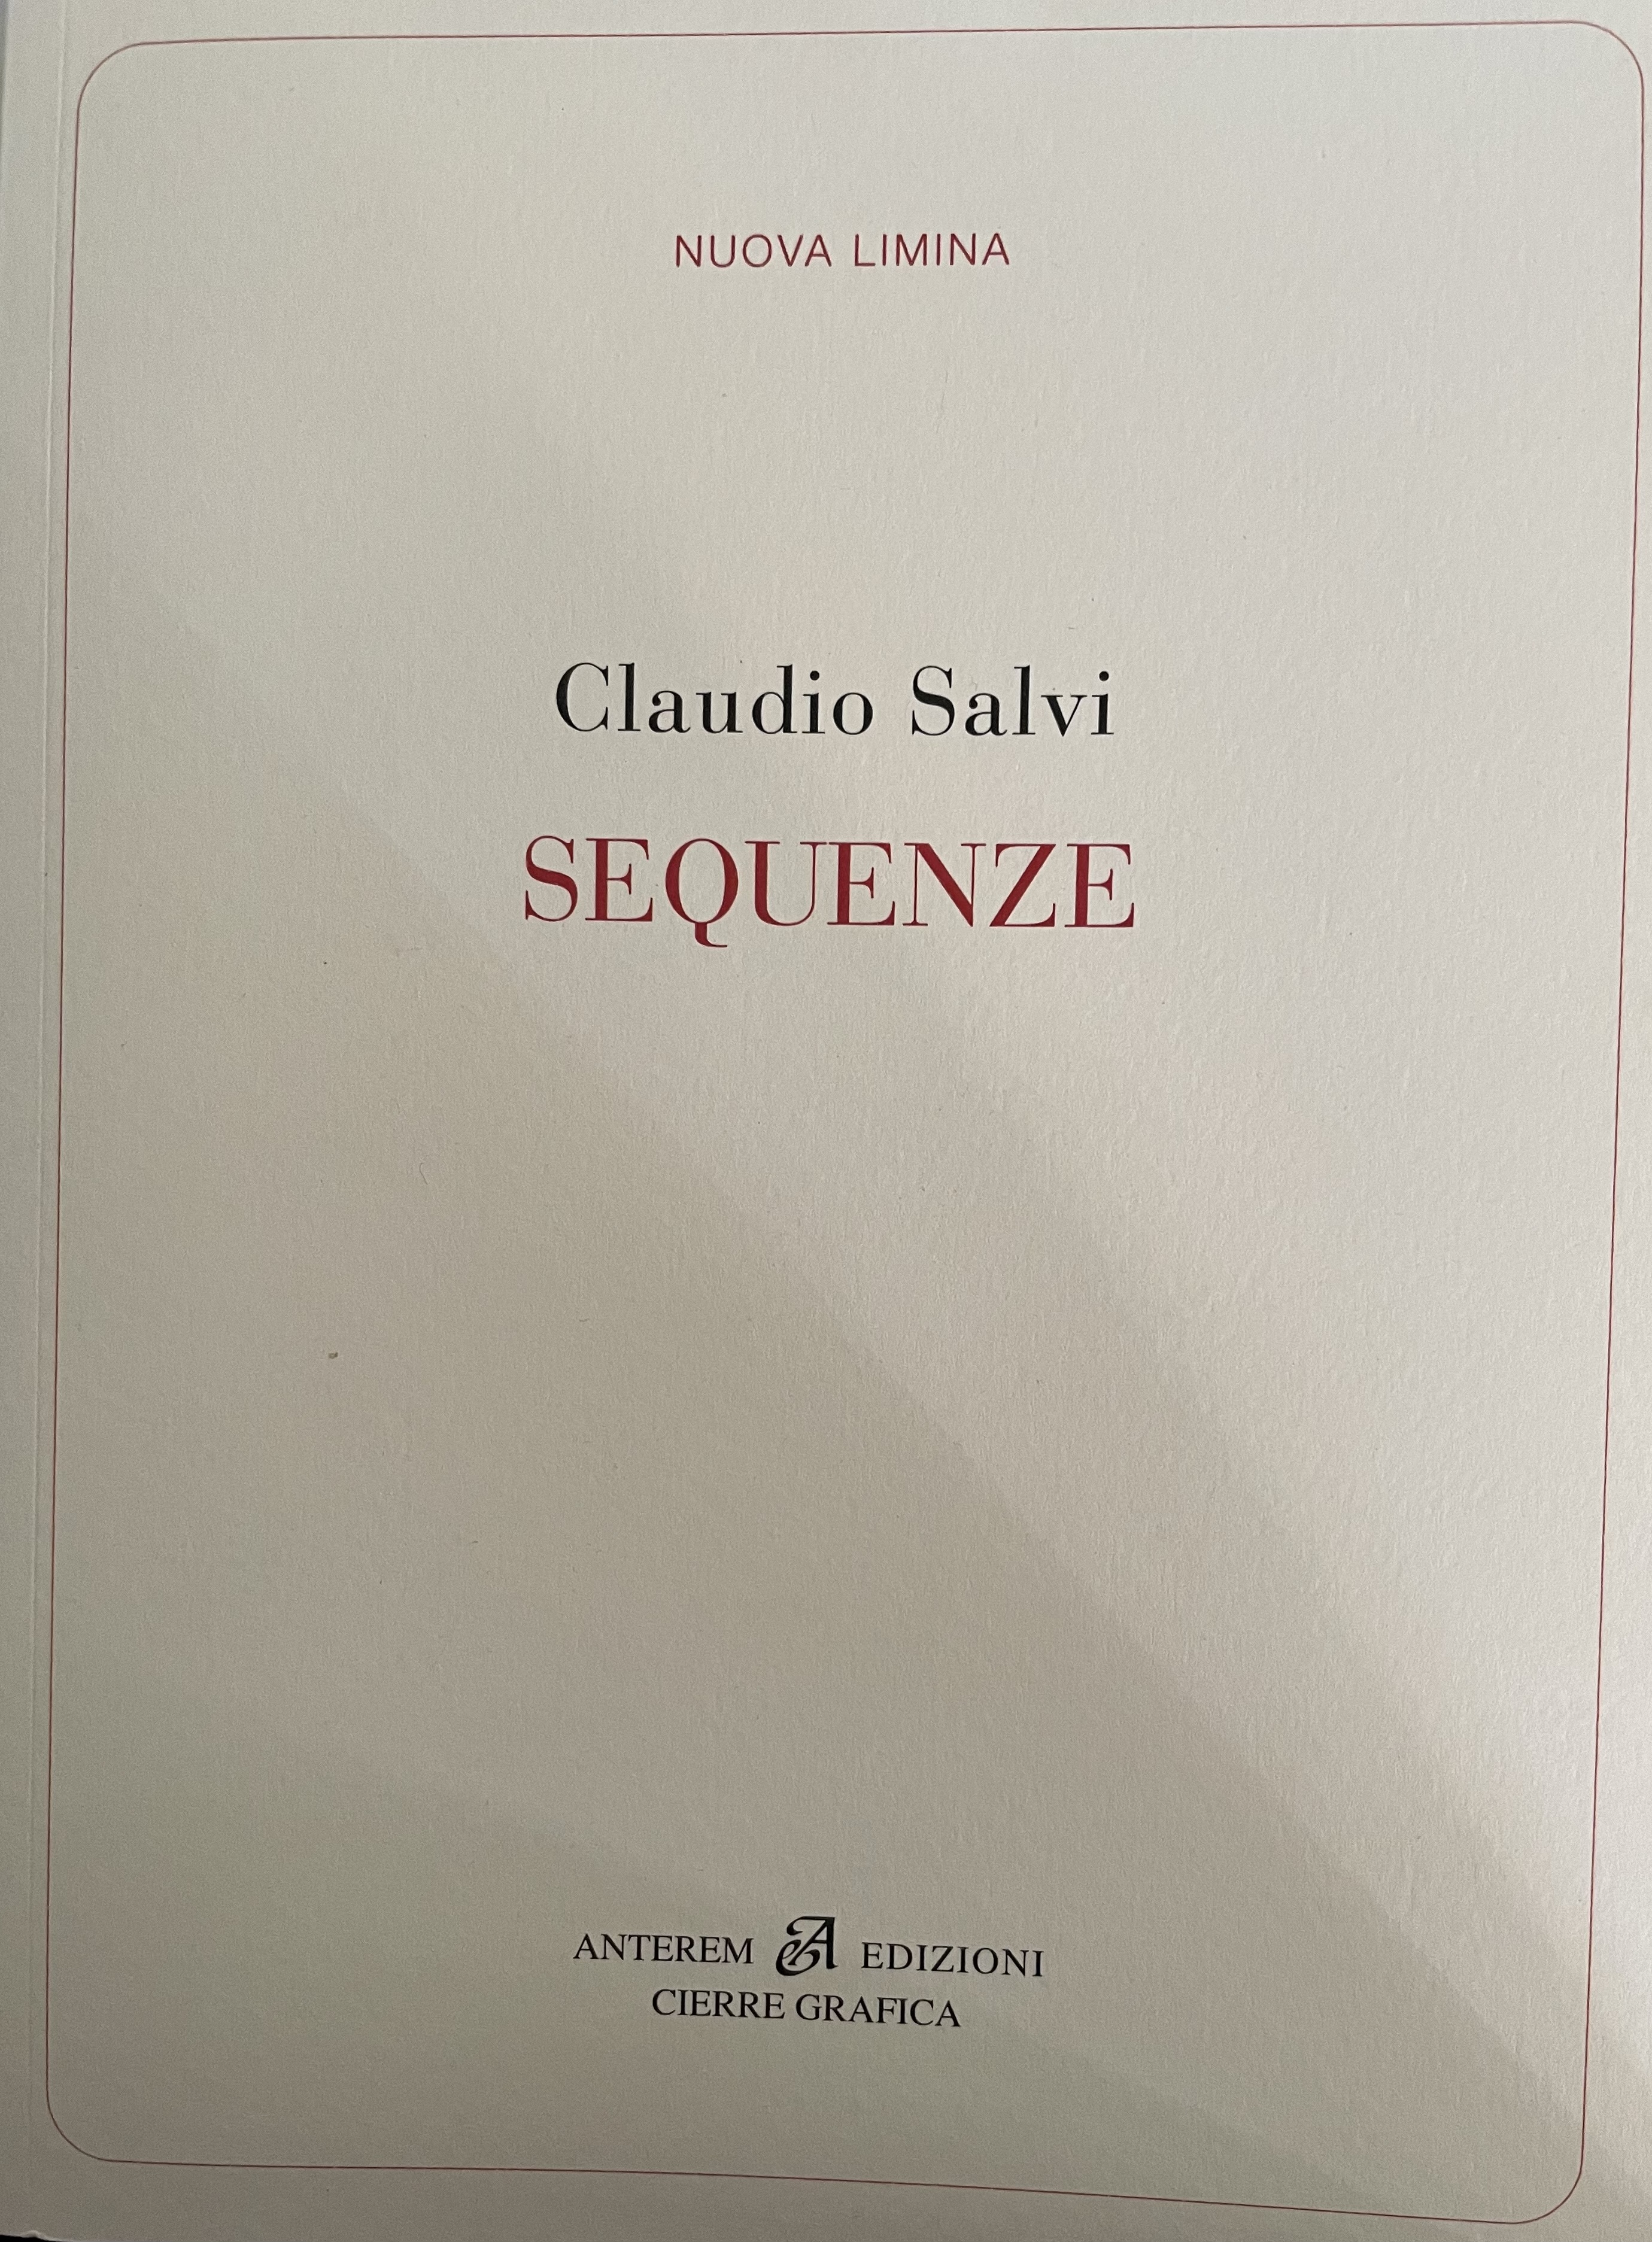 Claudio Salvi - Sequenze